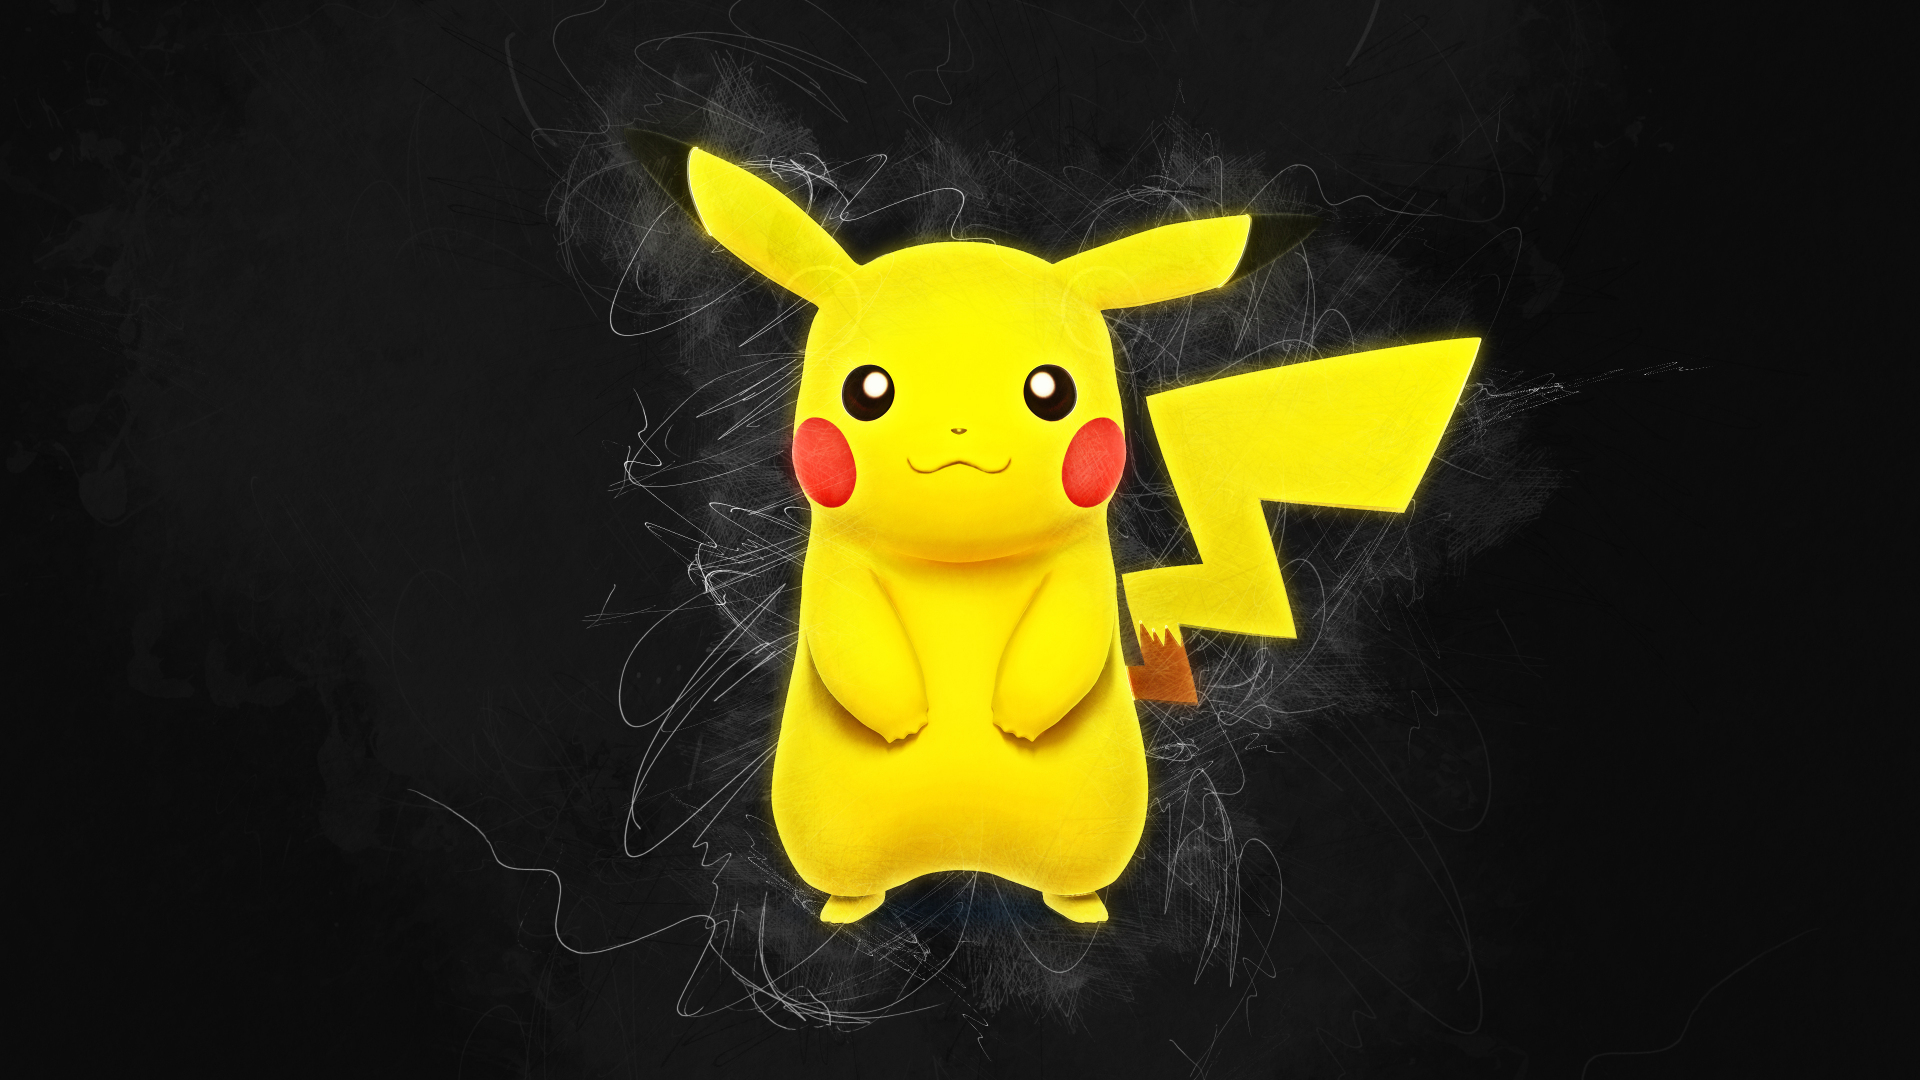 Pikachu Images - Free Download on Freepik